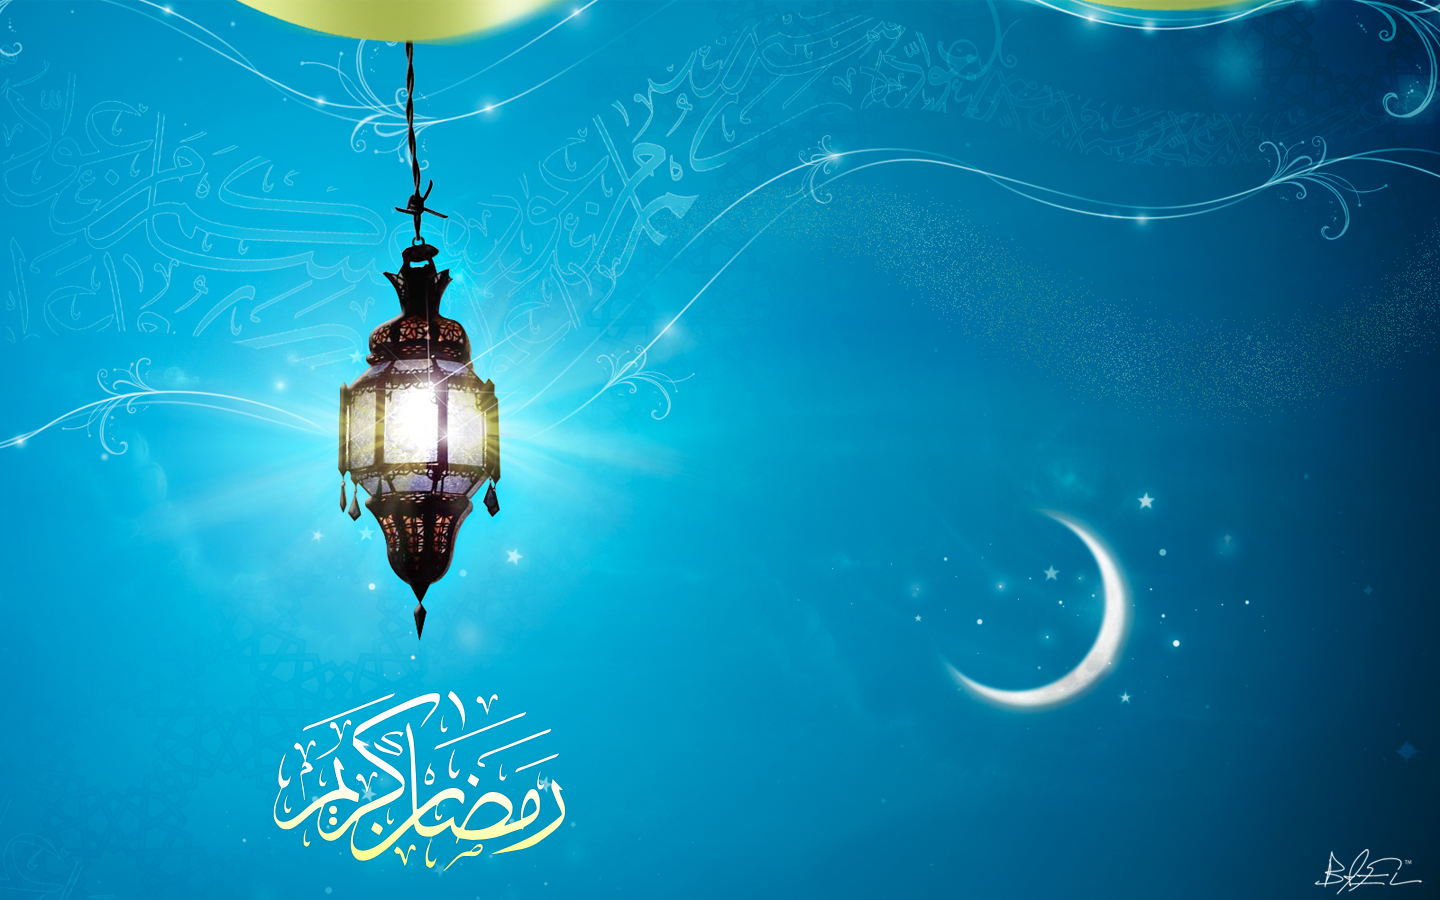 Beautiful Ramadan Desktop Wallpapers - Ramadan Kareem - 1440x900 Wallpaper  